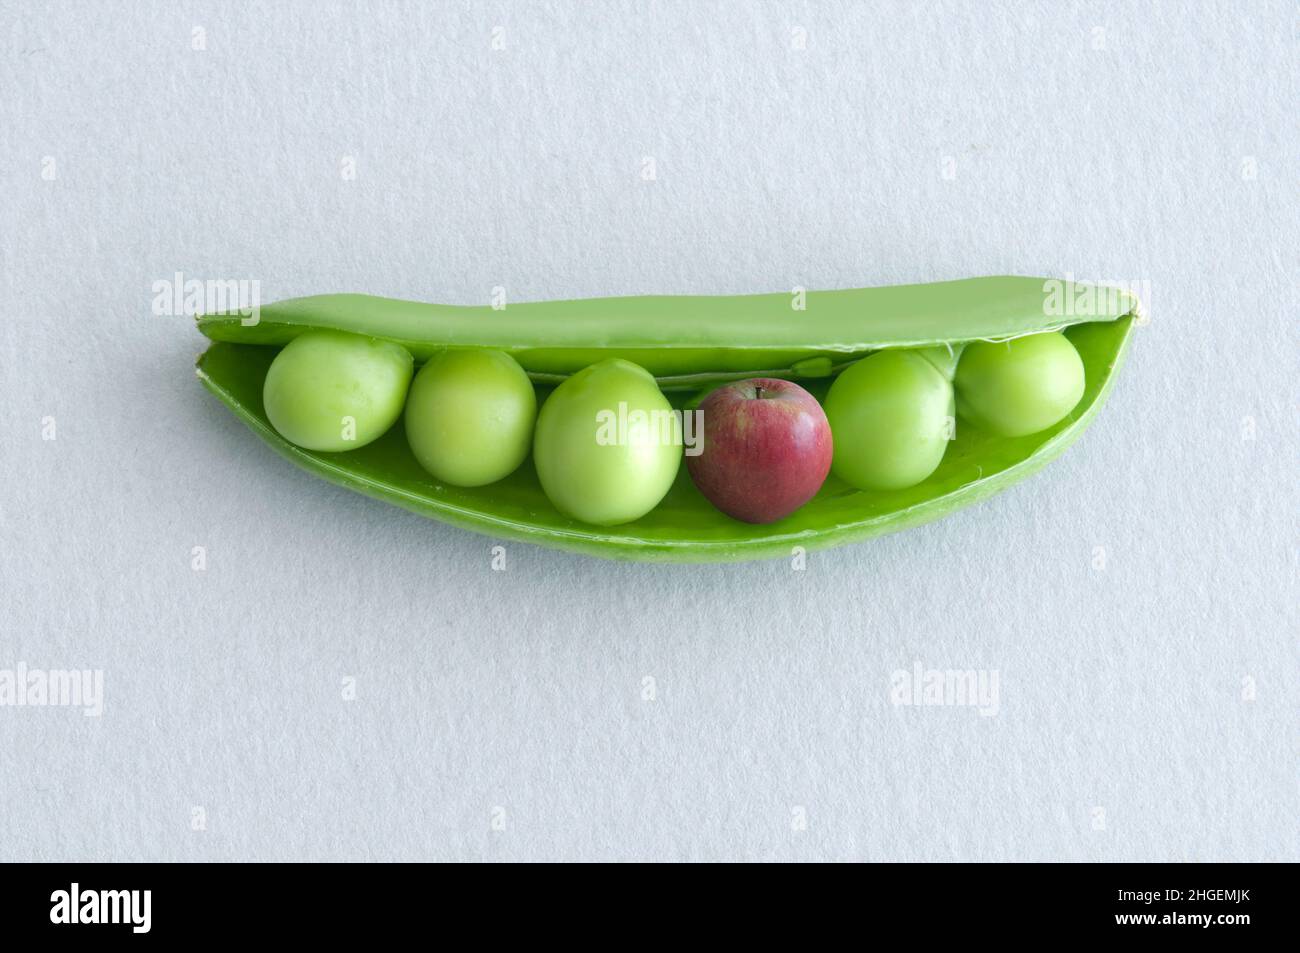 Petits pois dans une gousse avec pomme miniature, concept de régime équilibré Banque D'Images